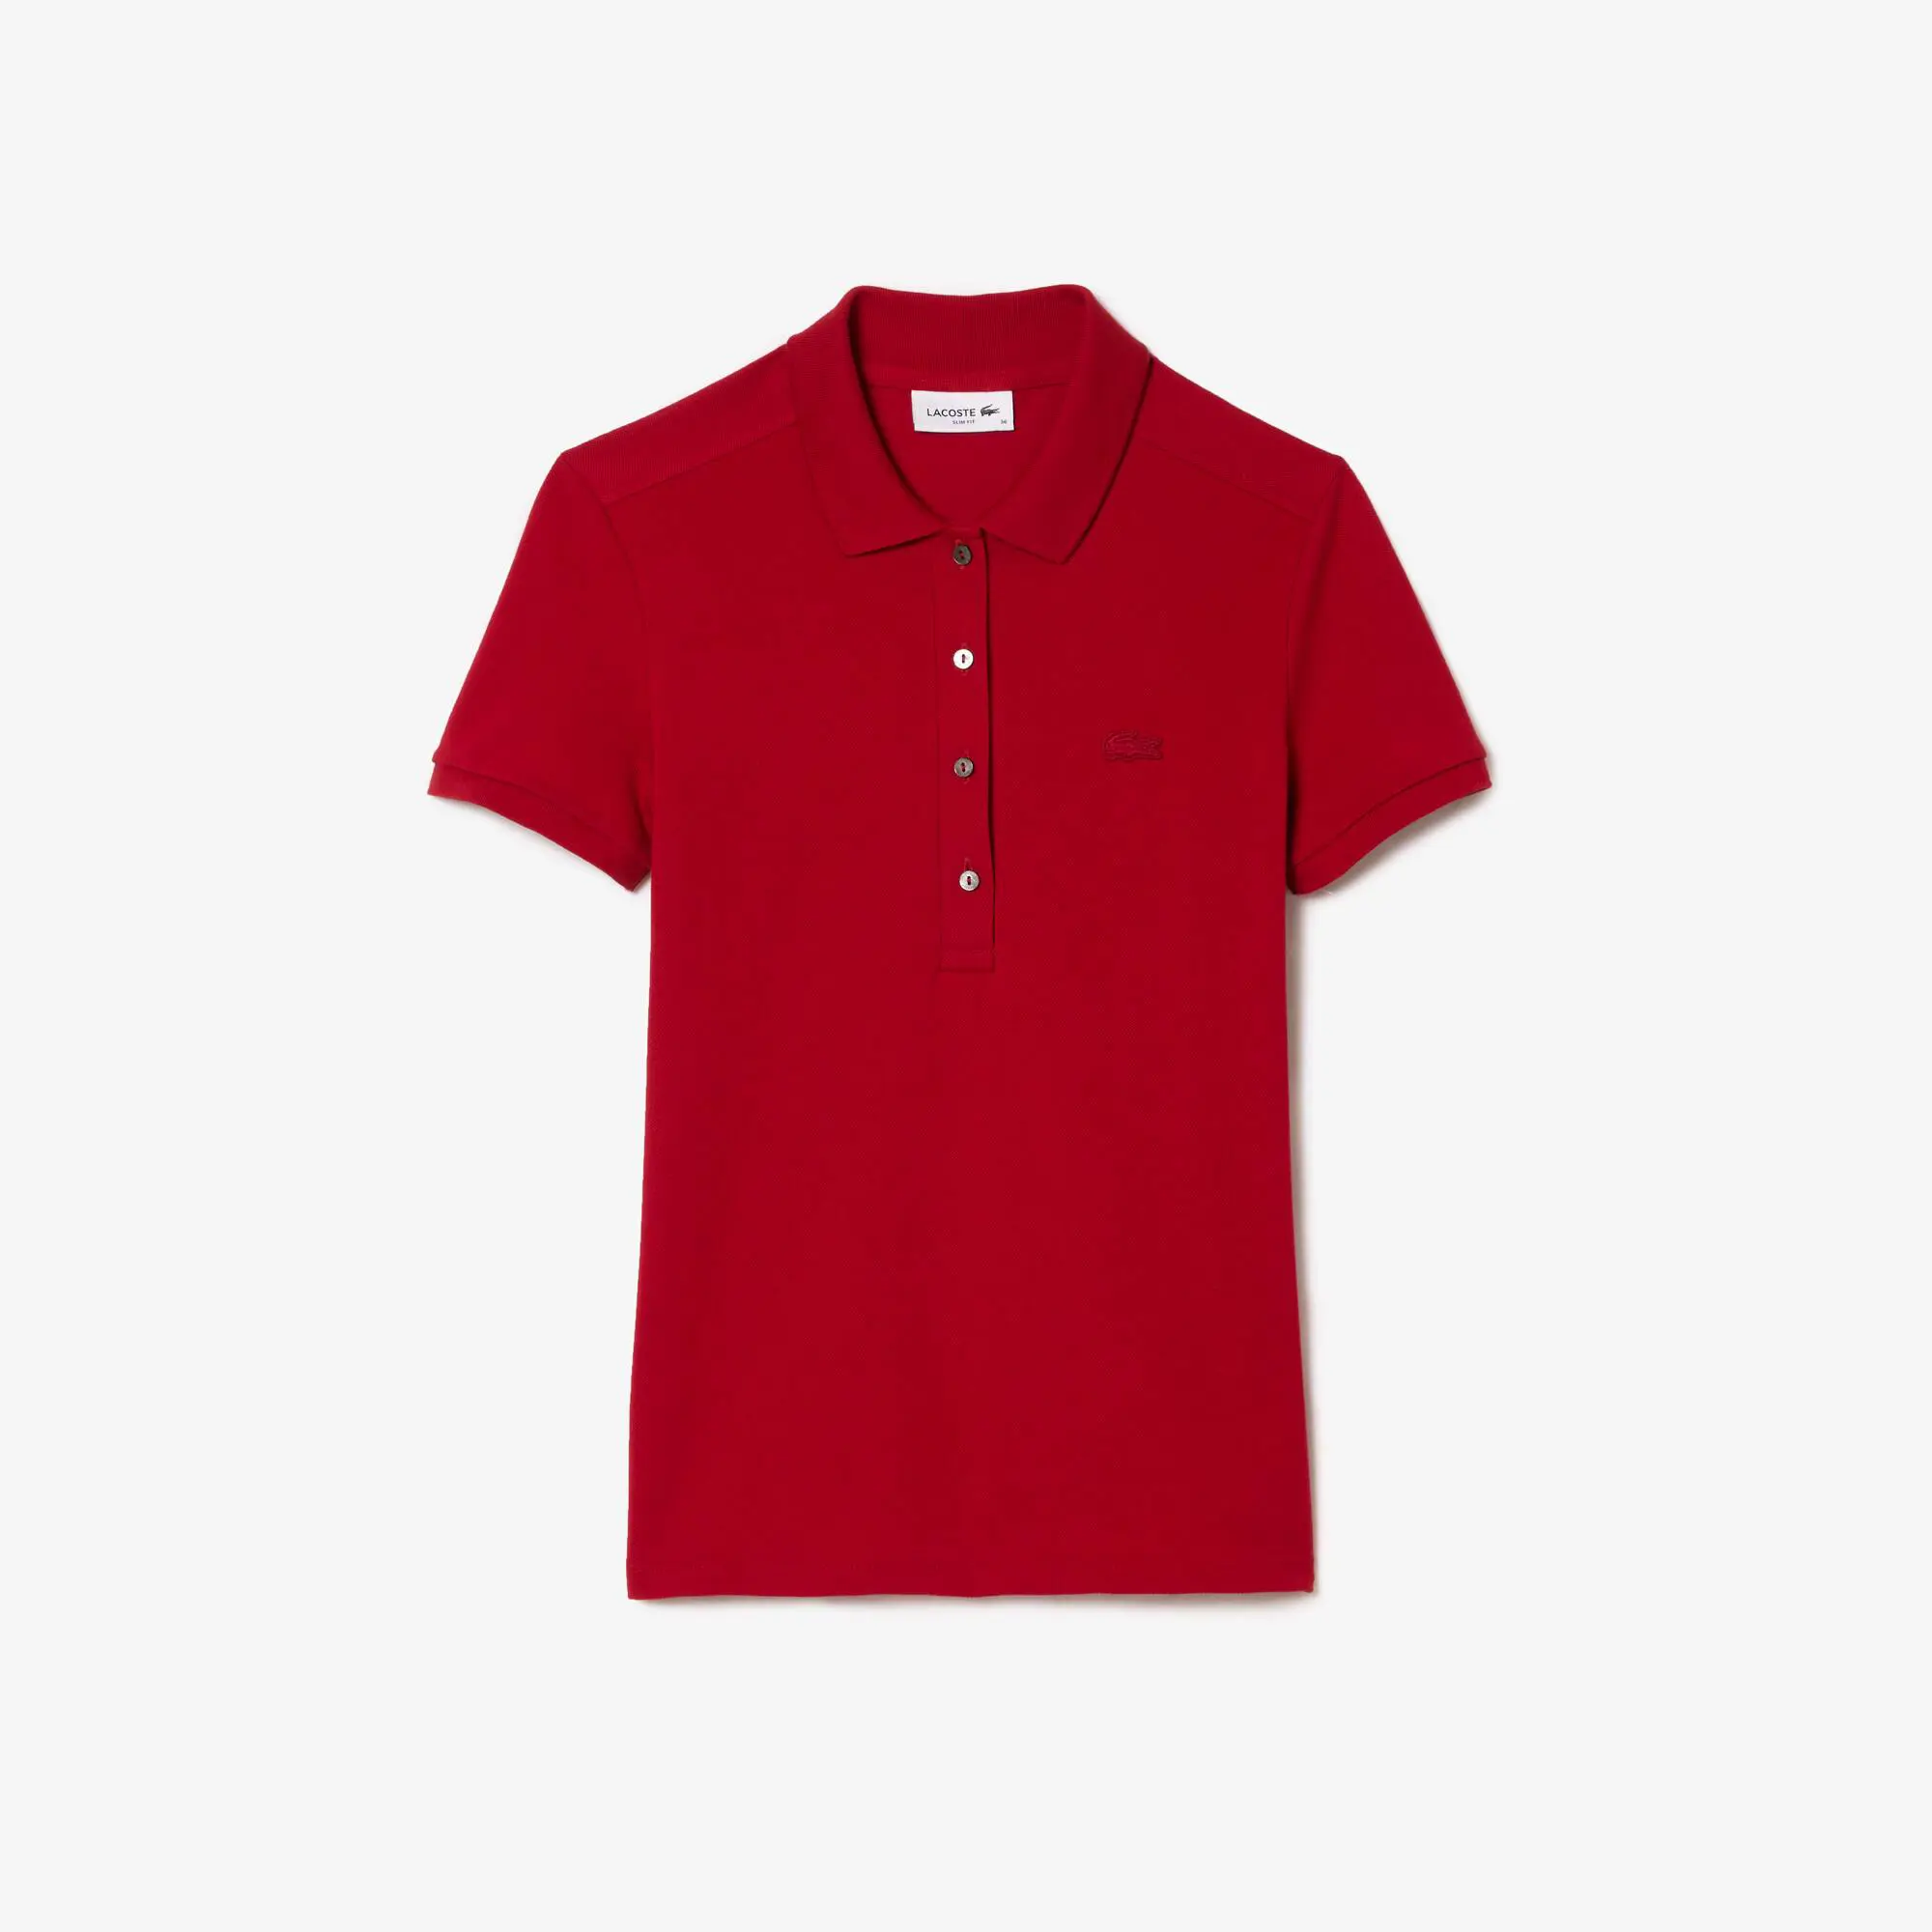 Lacoste Women's Lacoste Slim fit Stretch Cotton Piqué Polo Shirt. 2